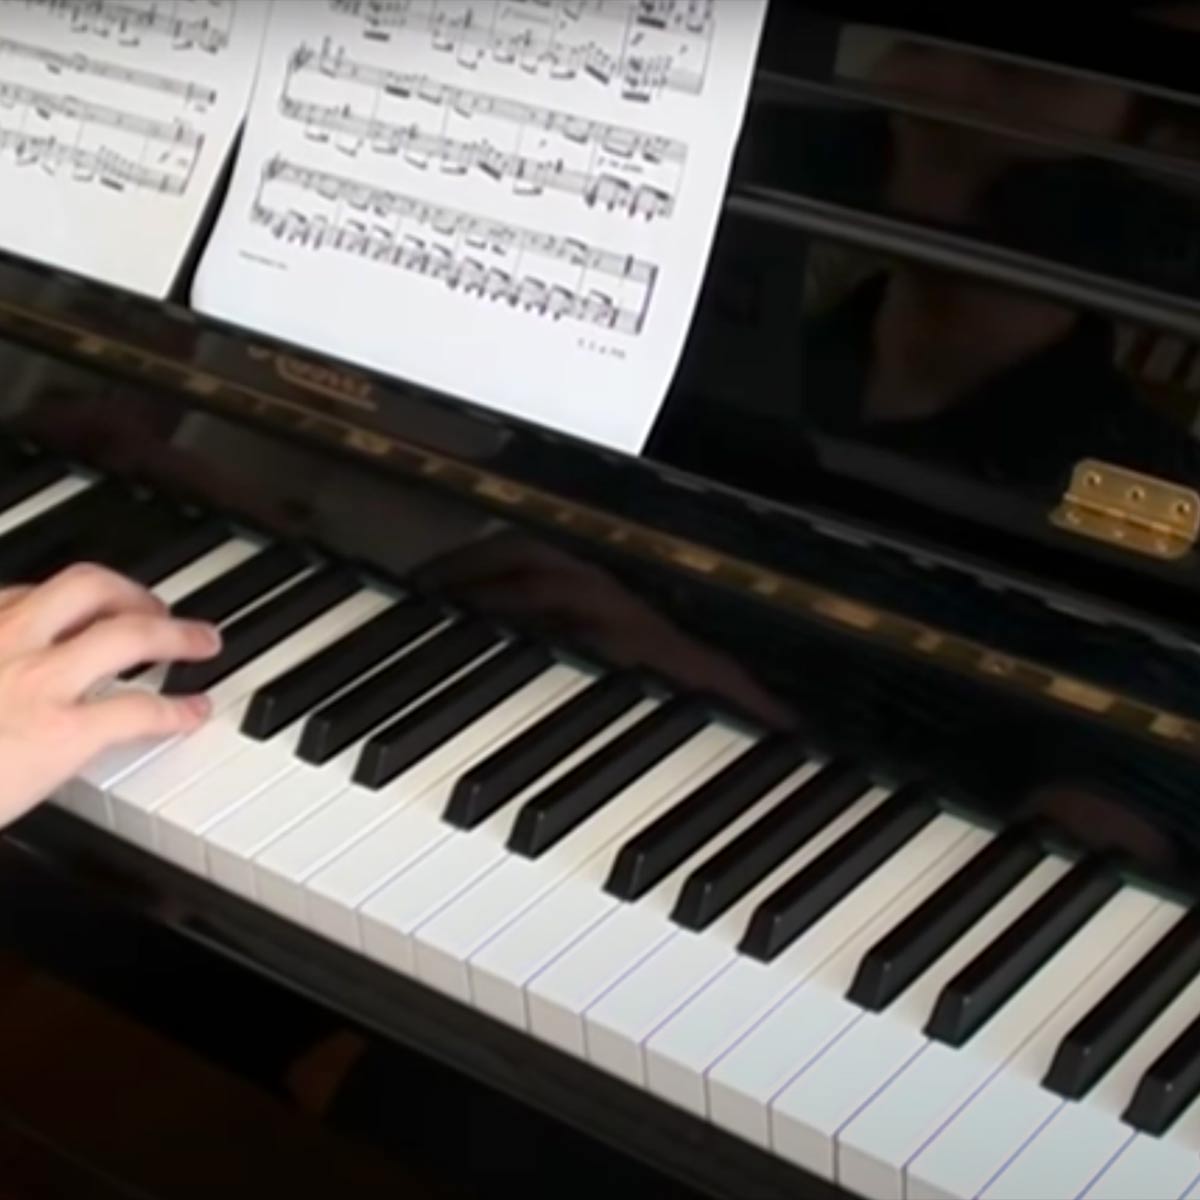 Play The Flea Waltz Piano Music Sheet On Virtual Piano - danganronpa roblox piano